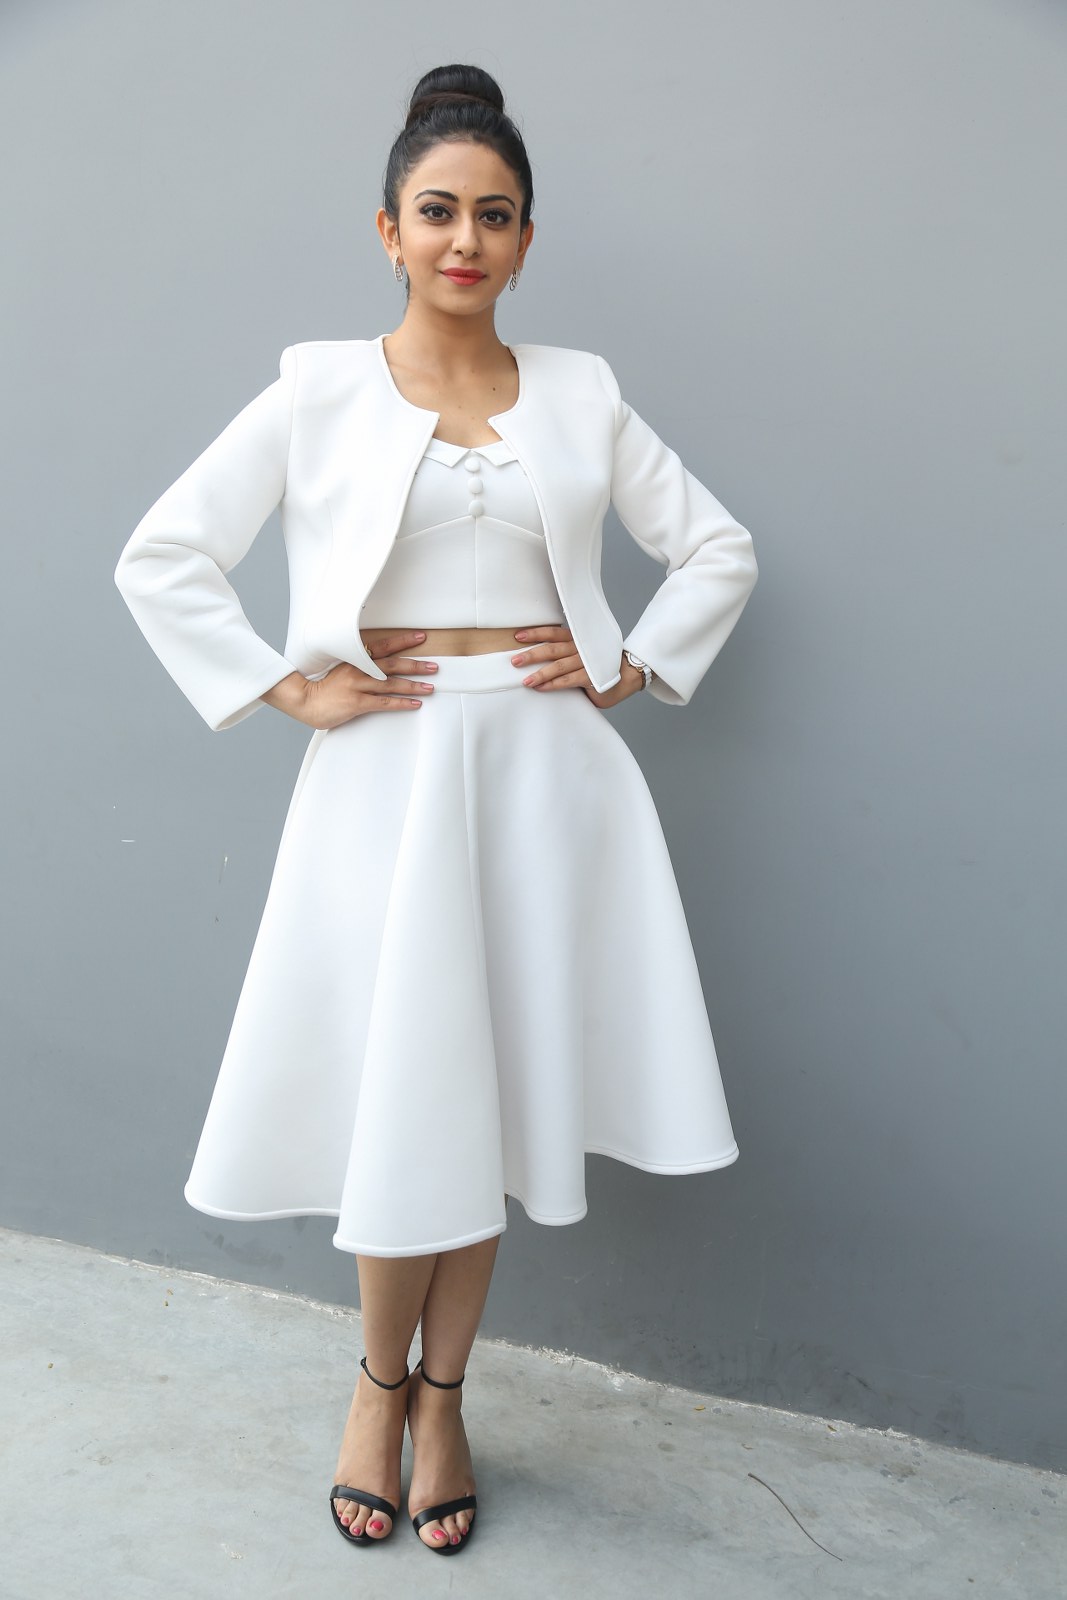 Rakul Preet Hot Photoshoot In White Dress